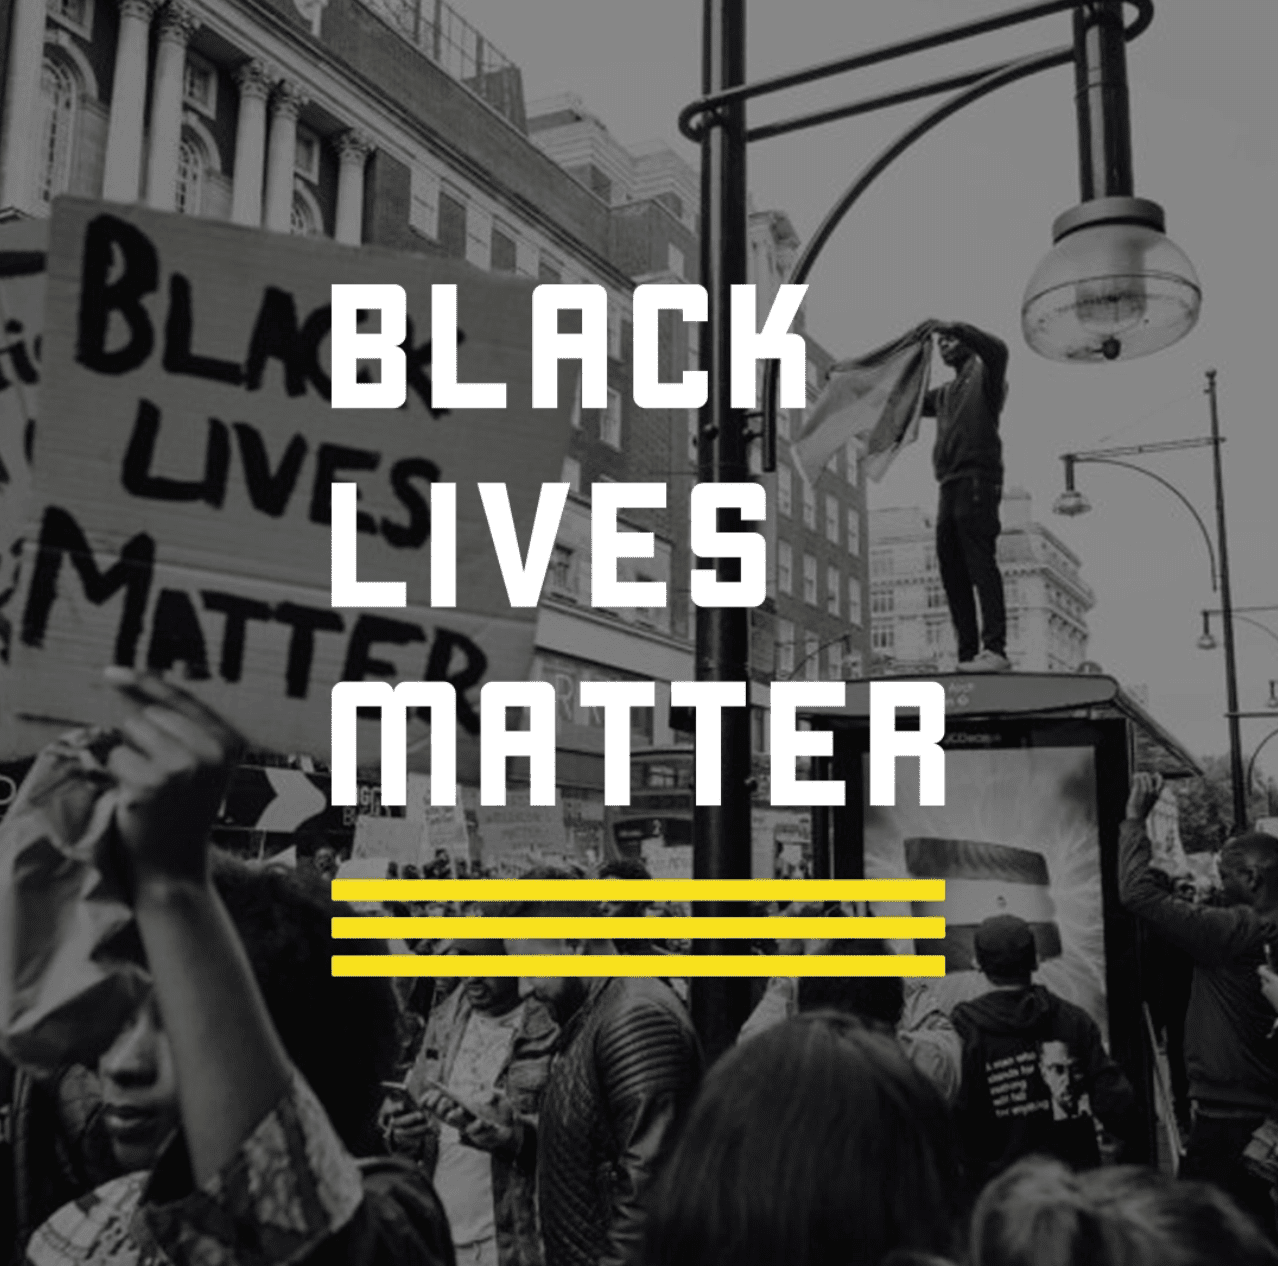 O gráfico de mídia social Black lives matter